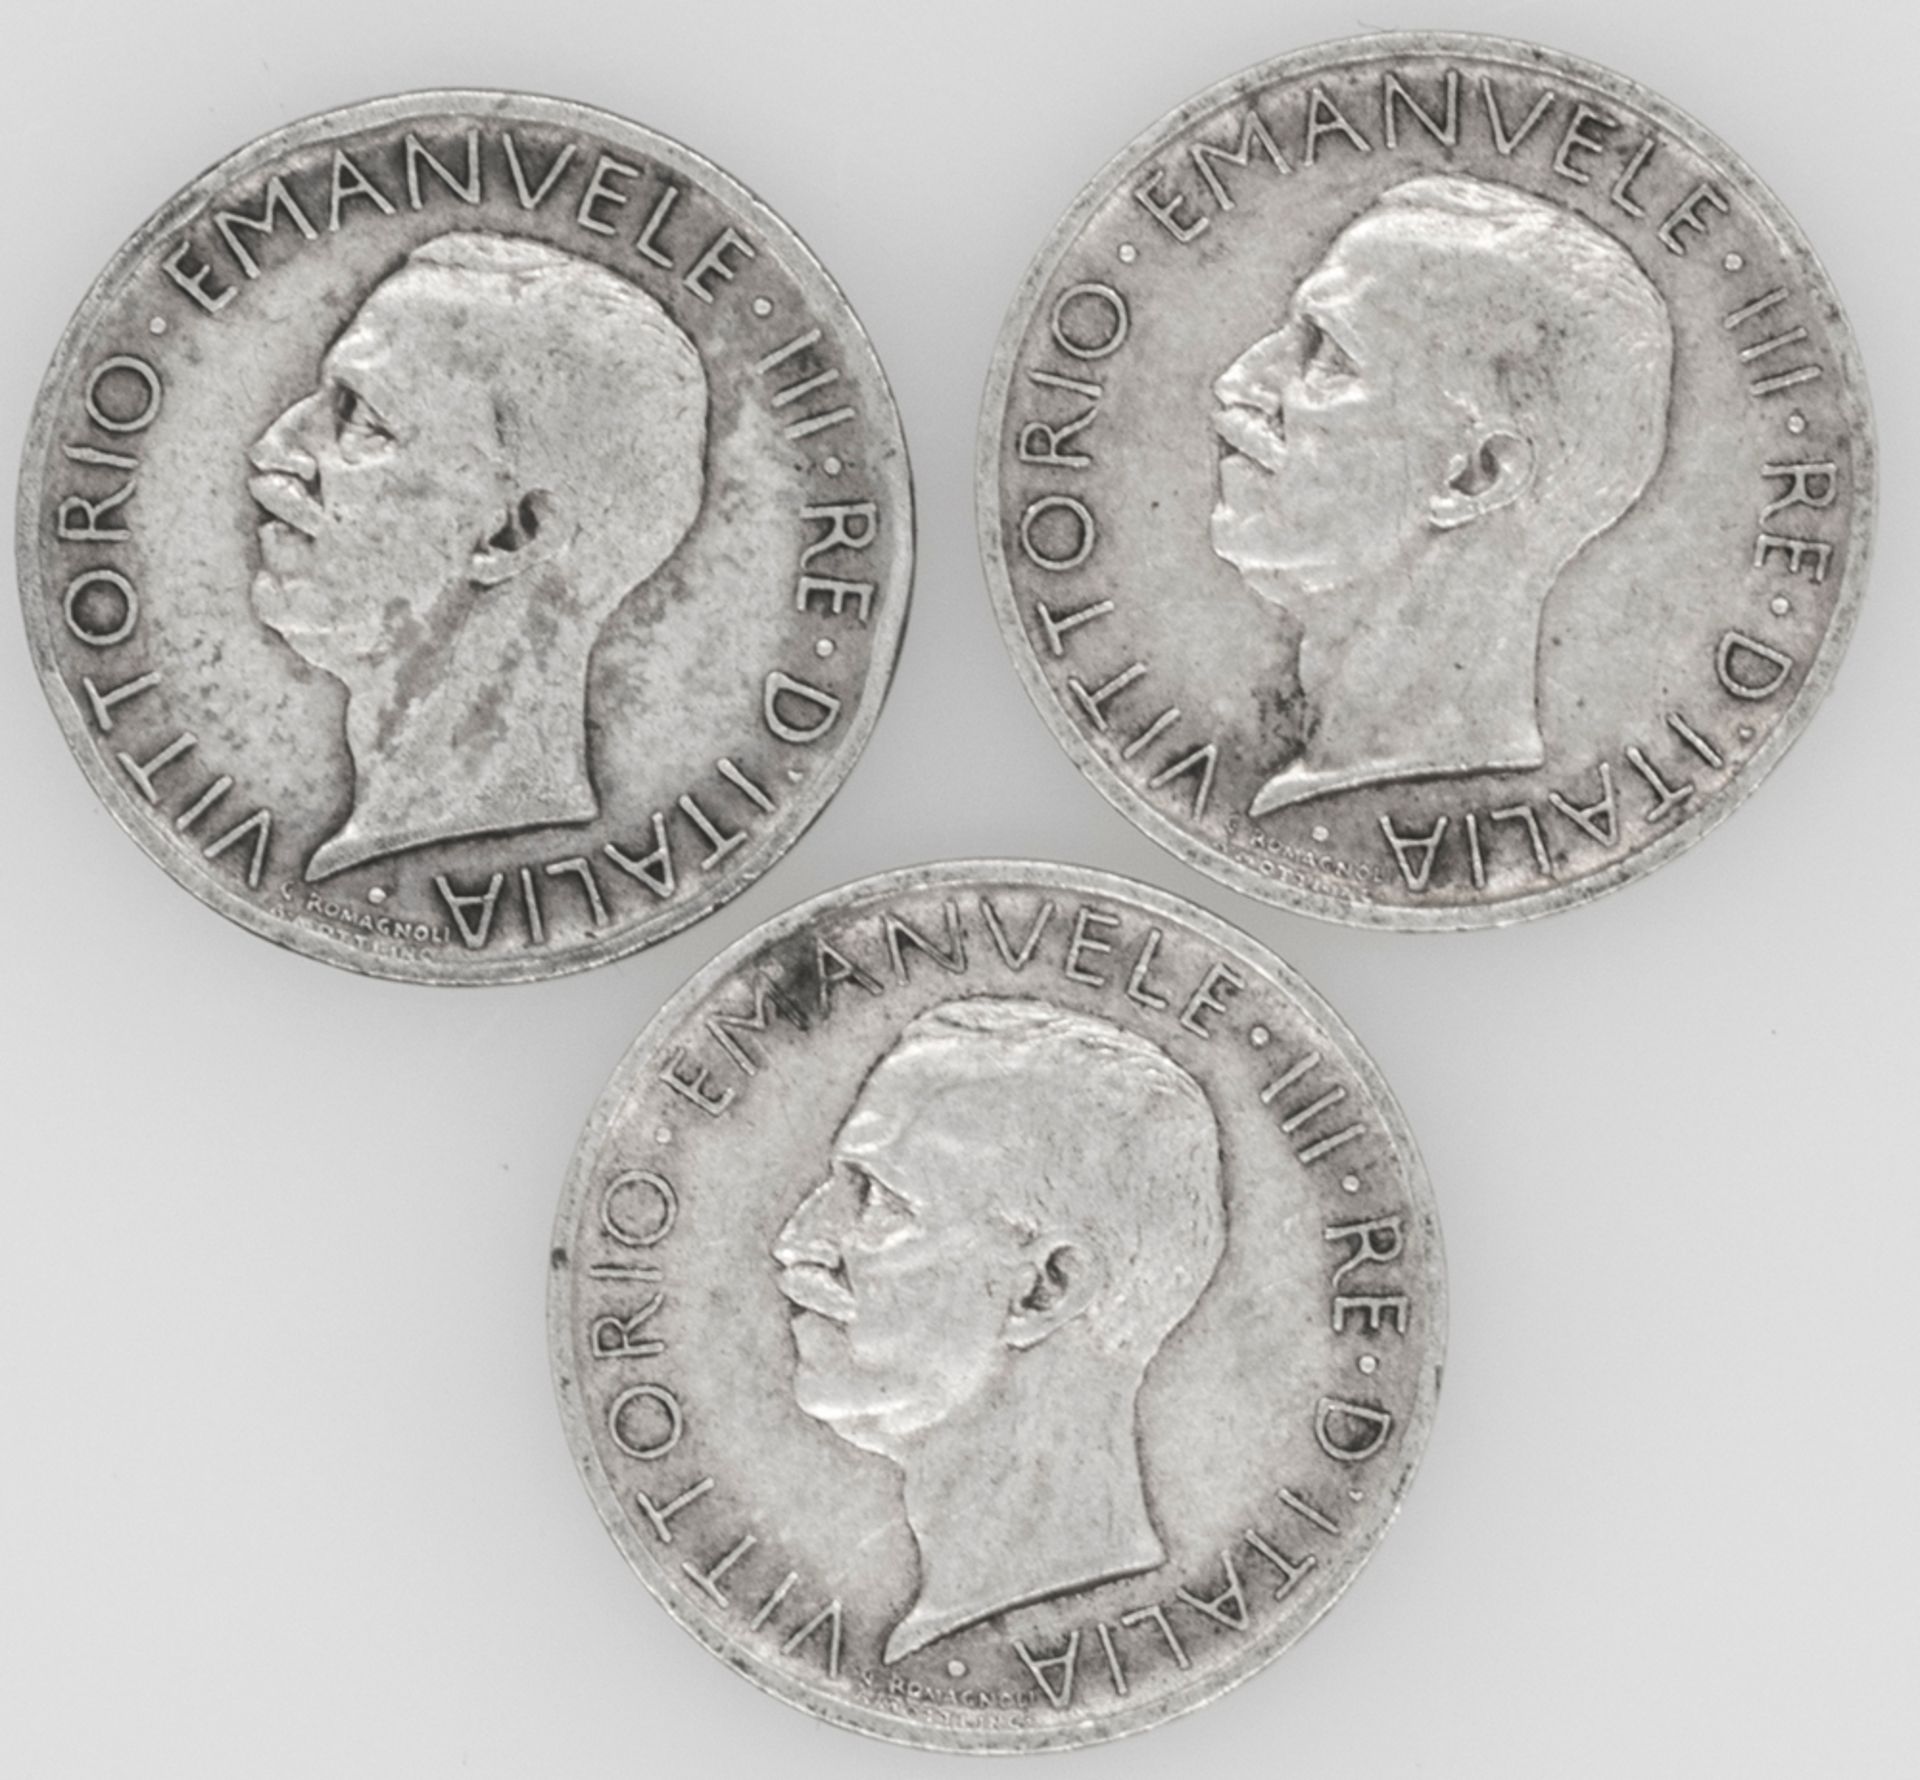 Italien 1926/27, drei 5 Lire - Silbermünzen, "Vittorio Emanuele III." Erhaltung: ss. - Bild 2 aus 2